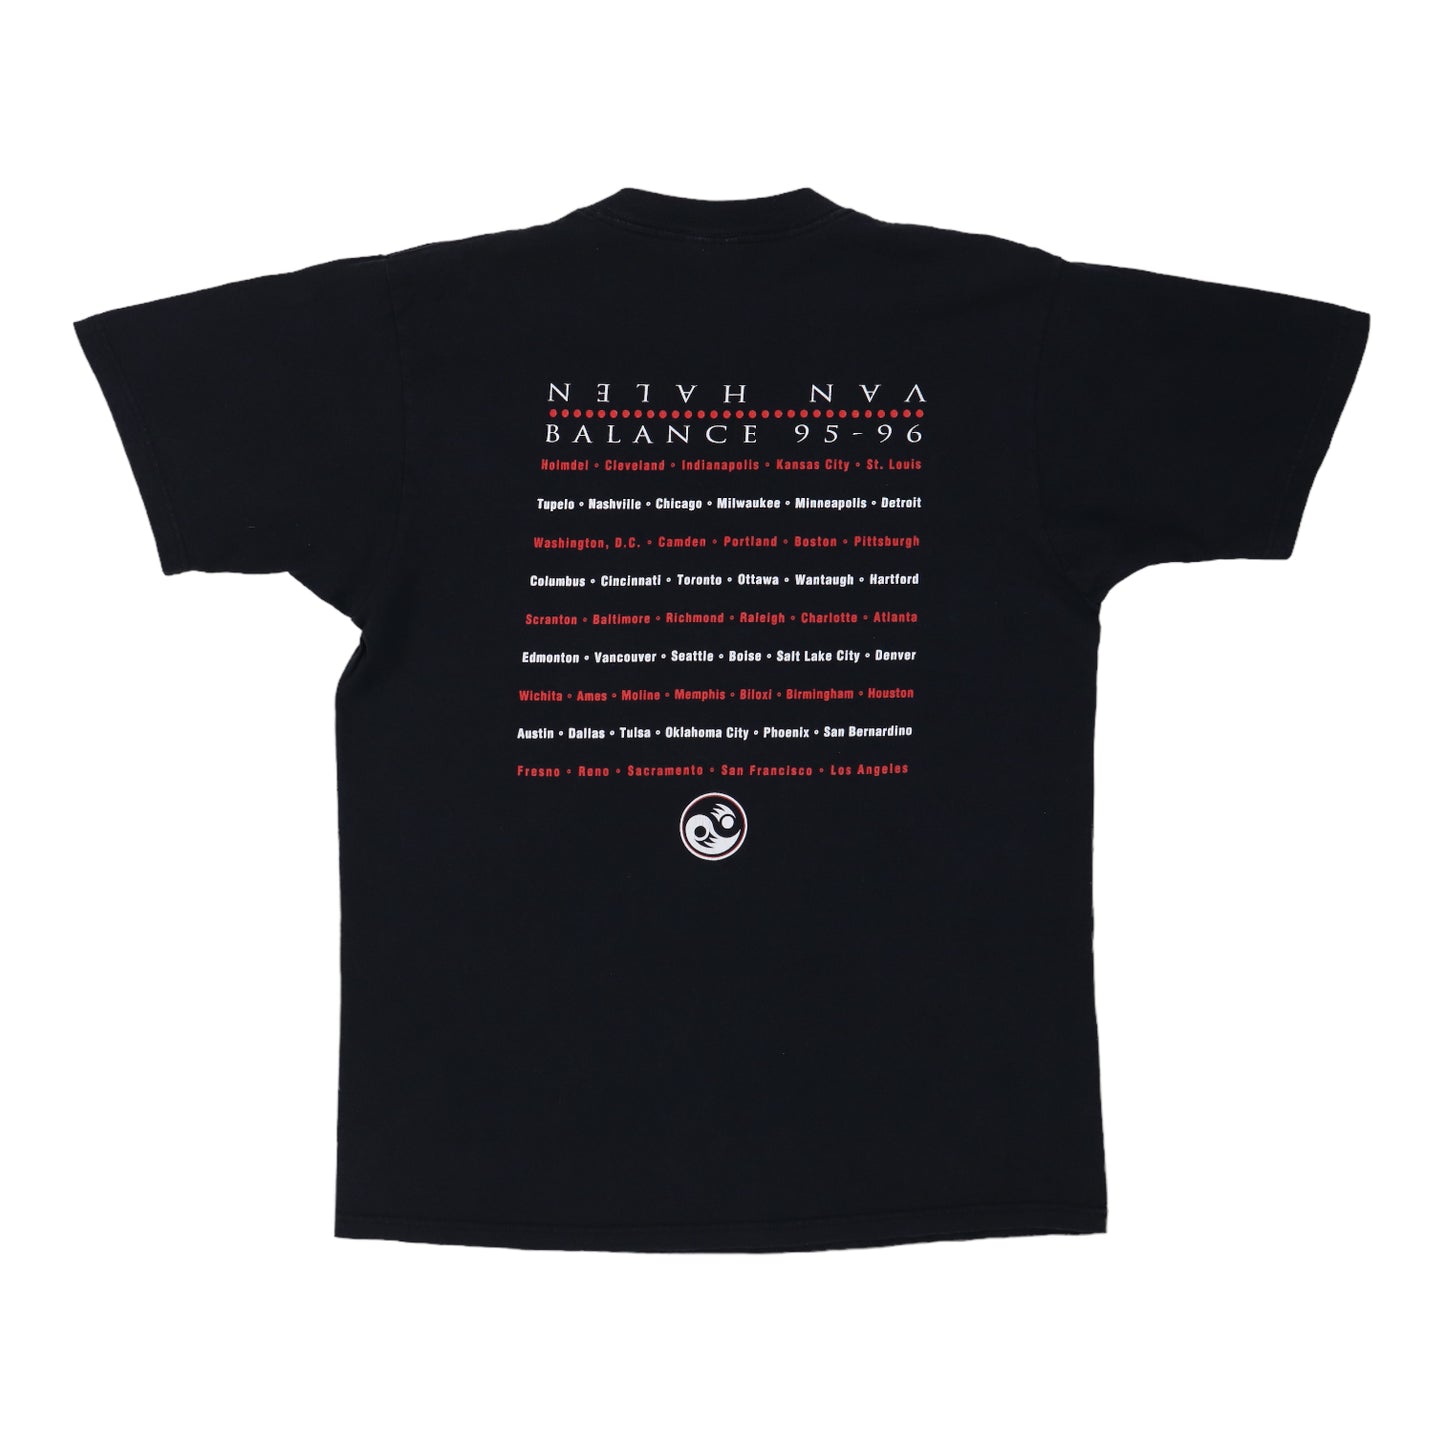 1995 Van Halen Balance Tour Shirt